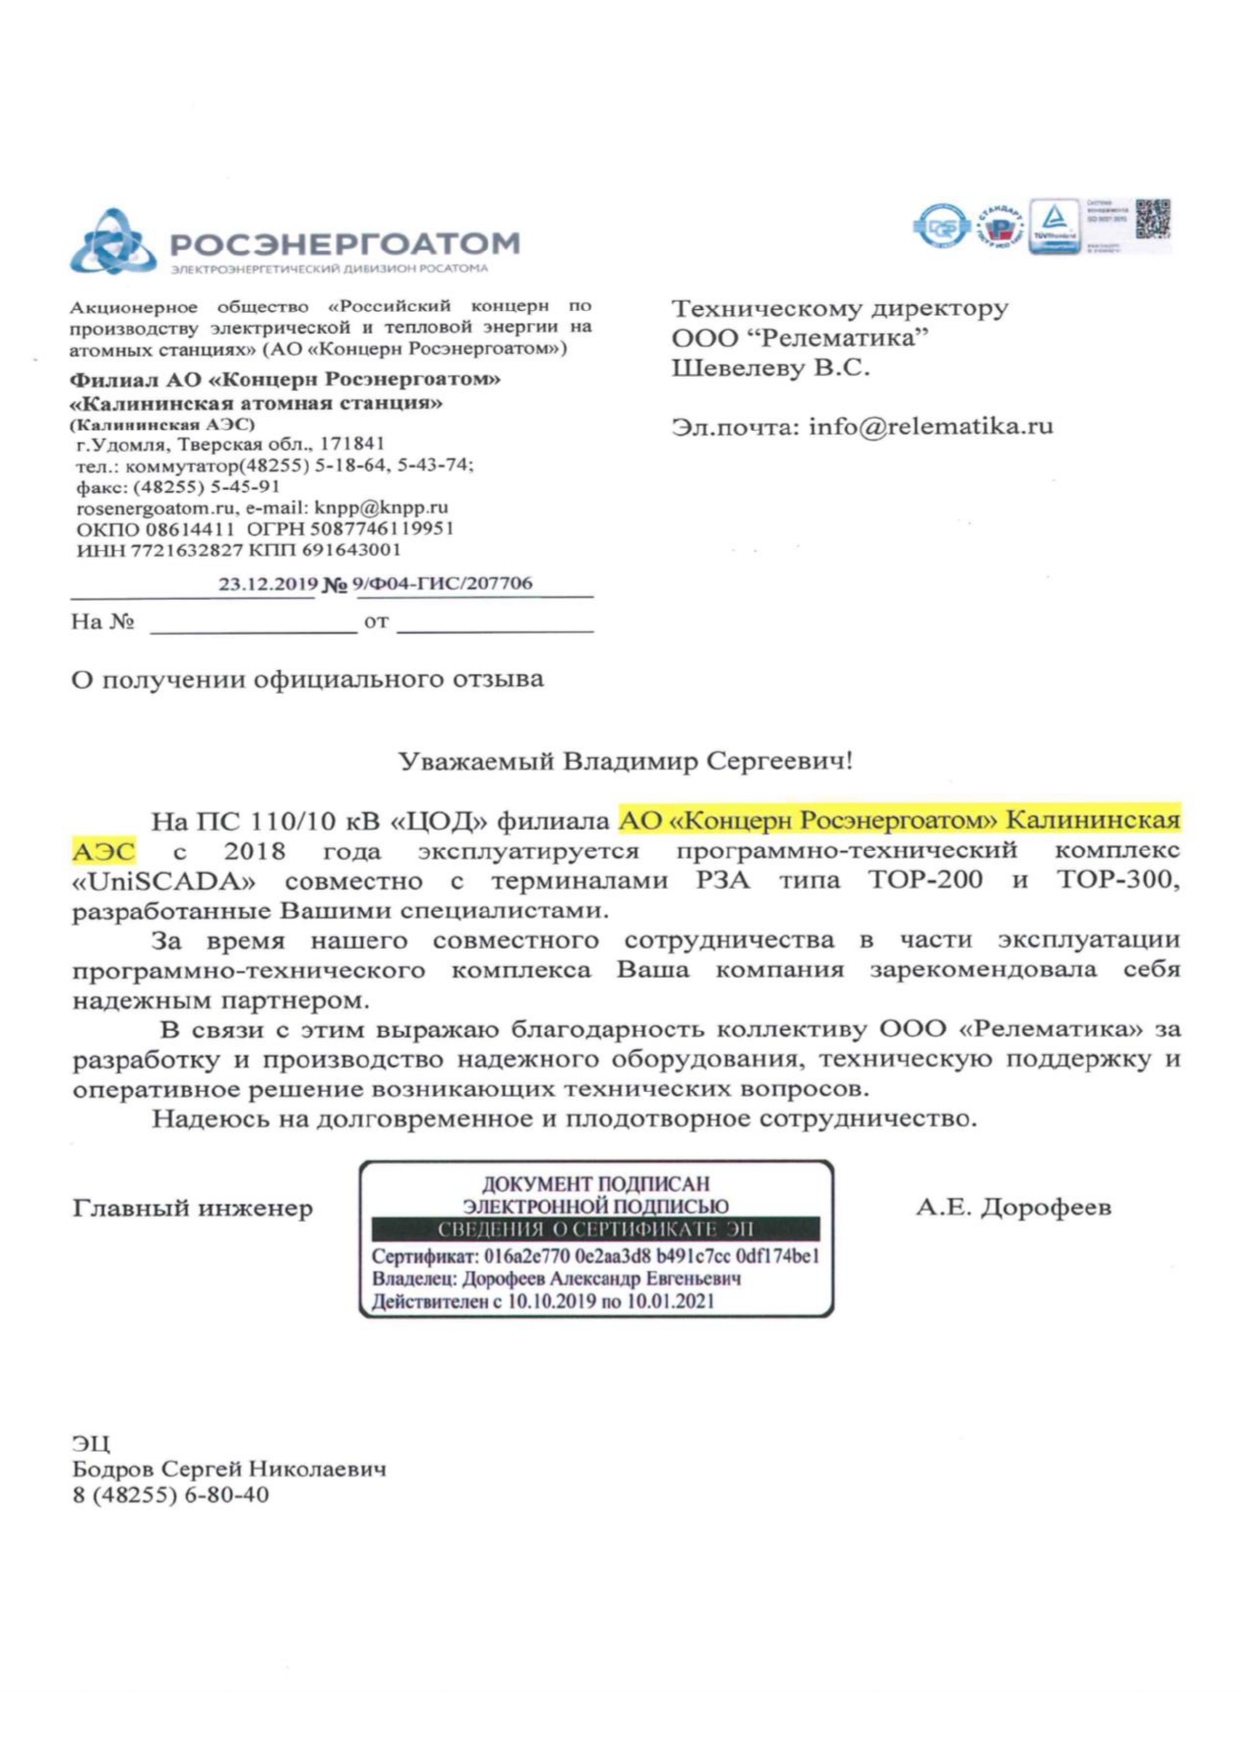 Отзыв от АО "Концерн Росэнергоатом" о работе ПТК "UniSCADA"